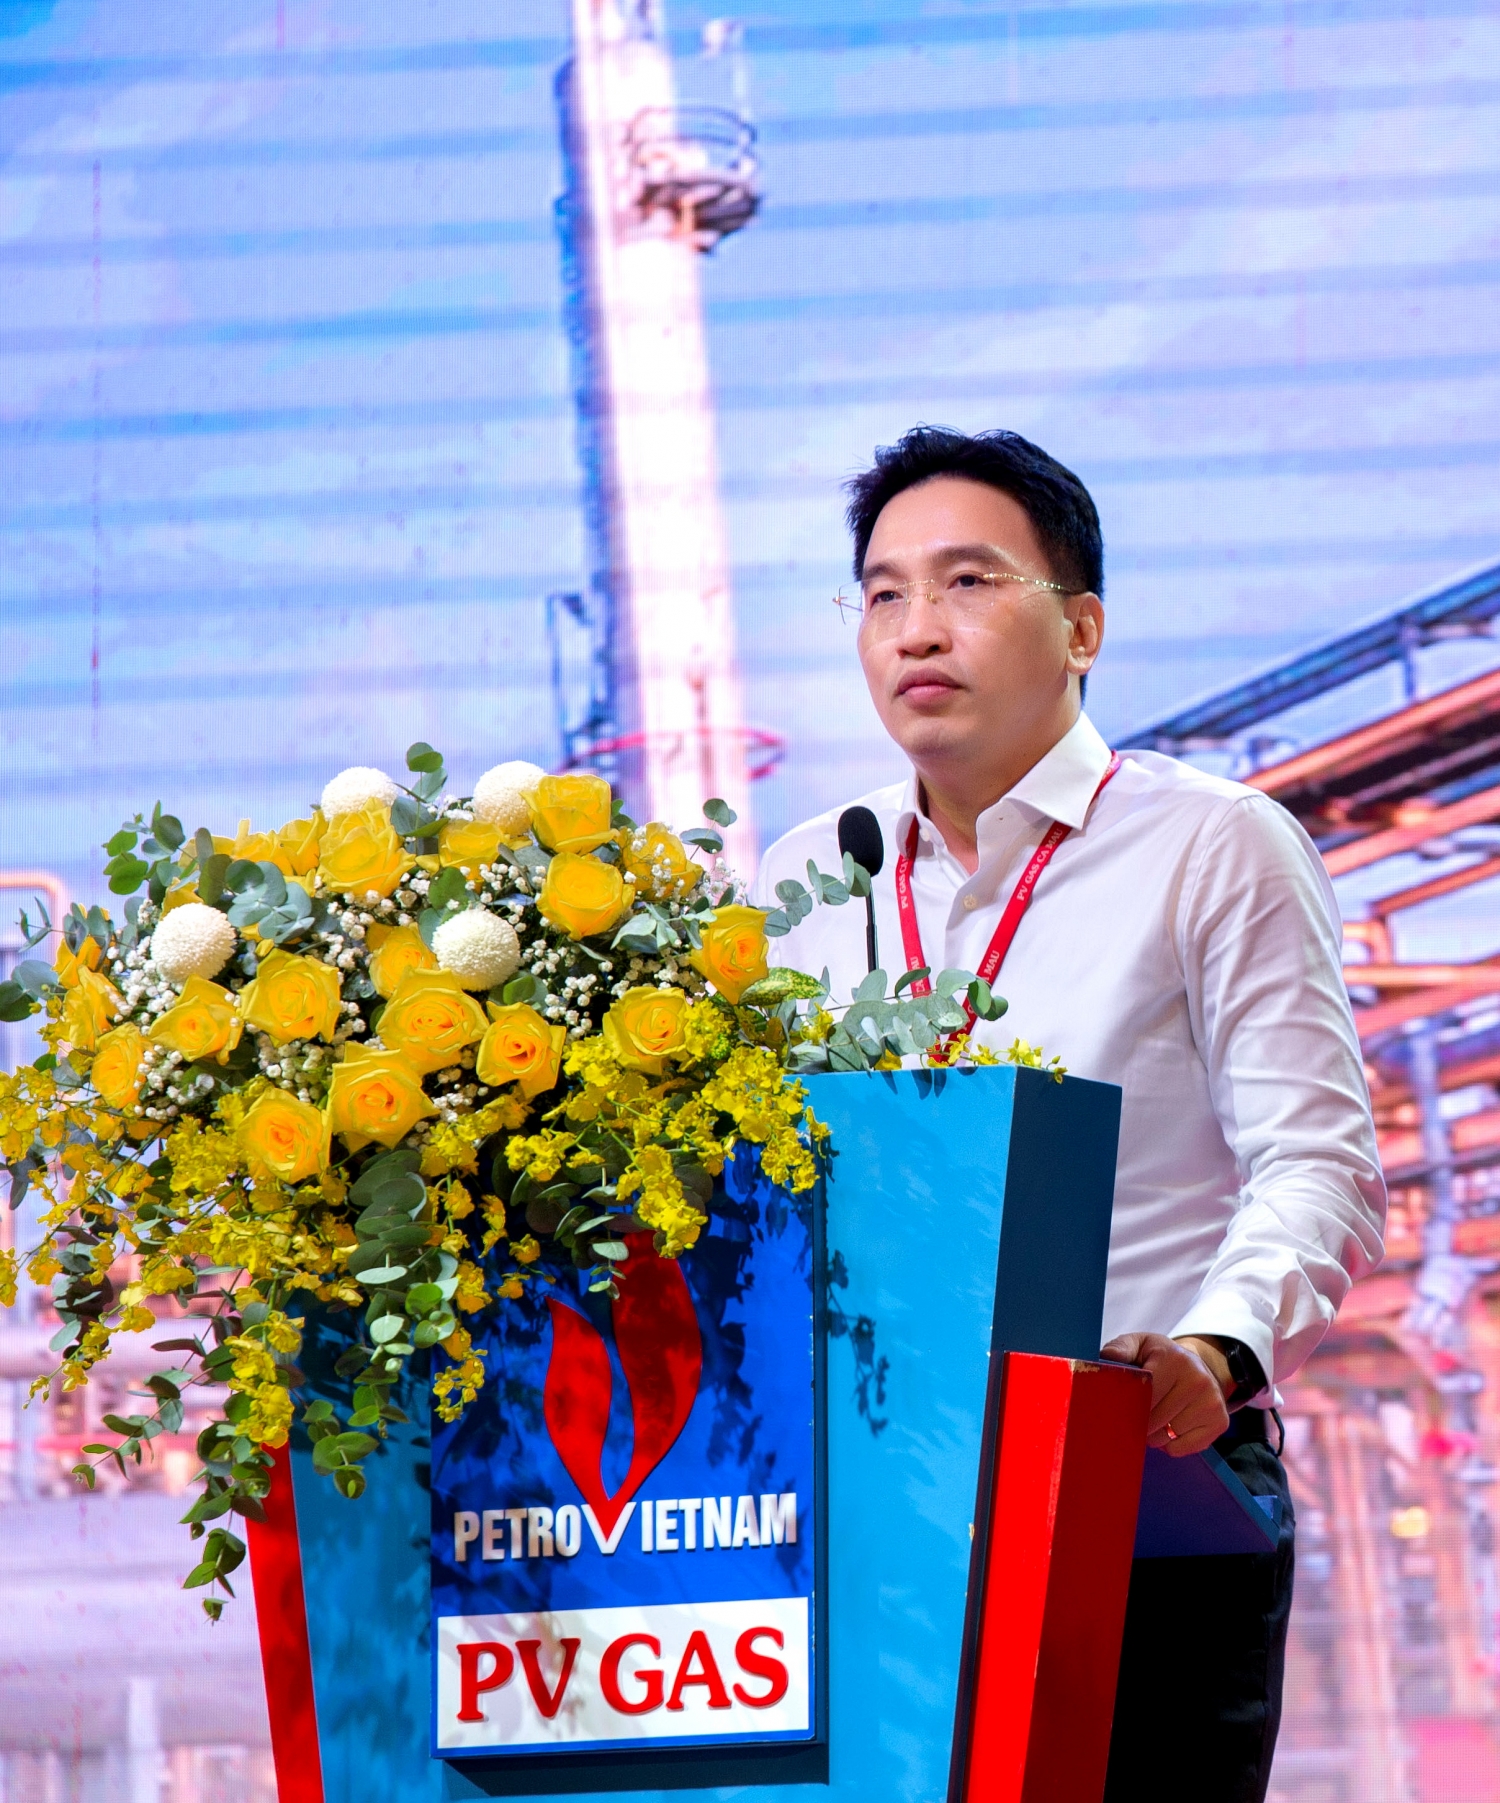 ông Nguyễn Thanh Bình - Phó Tổng Giám đốc PV GAS đánh giá cao nỗ lực của KCM trong việc thực hiện các mục tiêu năm 2022